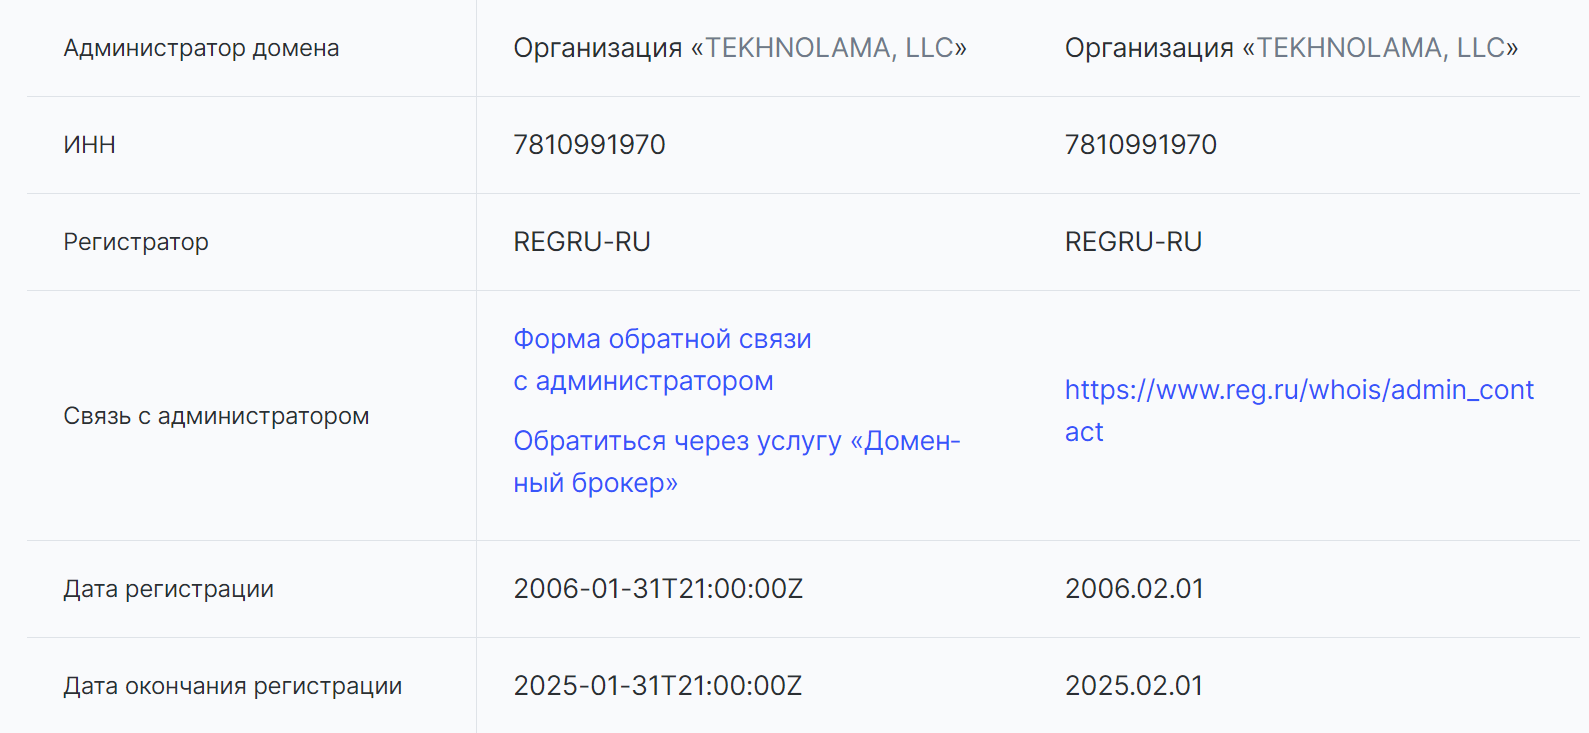 Информация о домене содержится в том числе на сайтах регистраторов